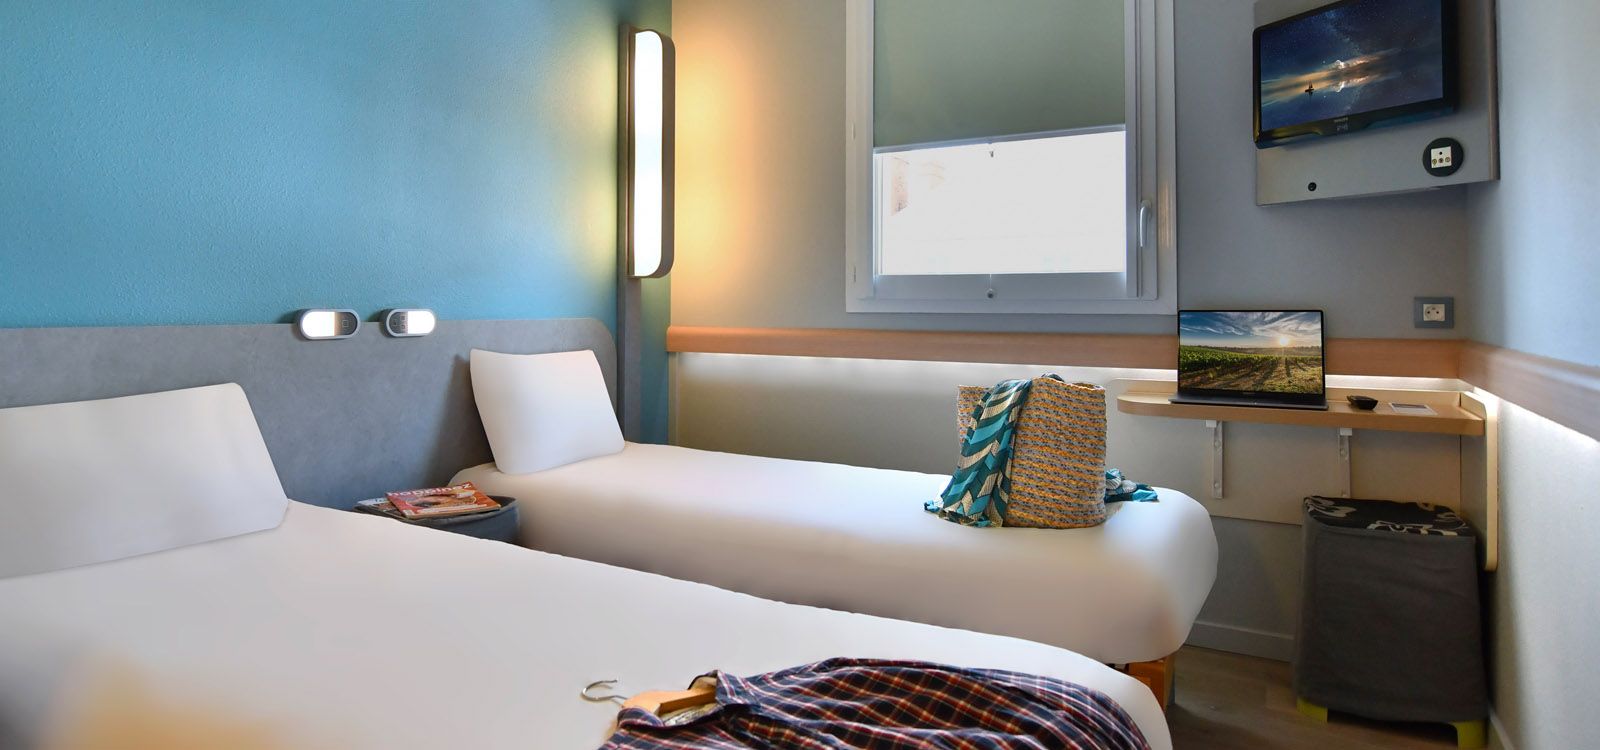 Chambre 2 lits simples hôtel Cholet